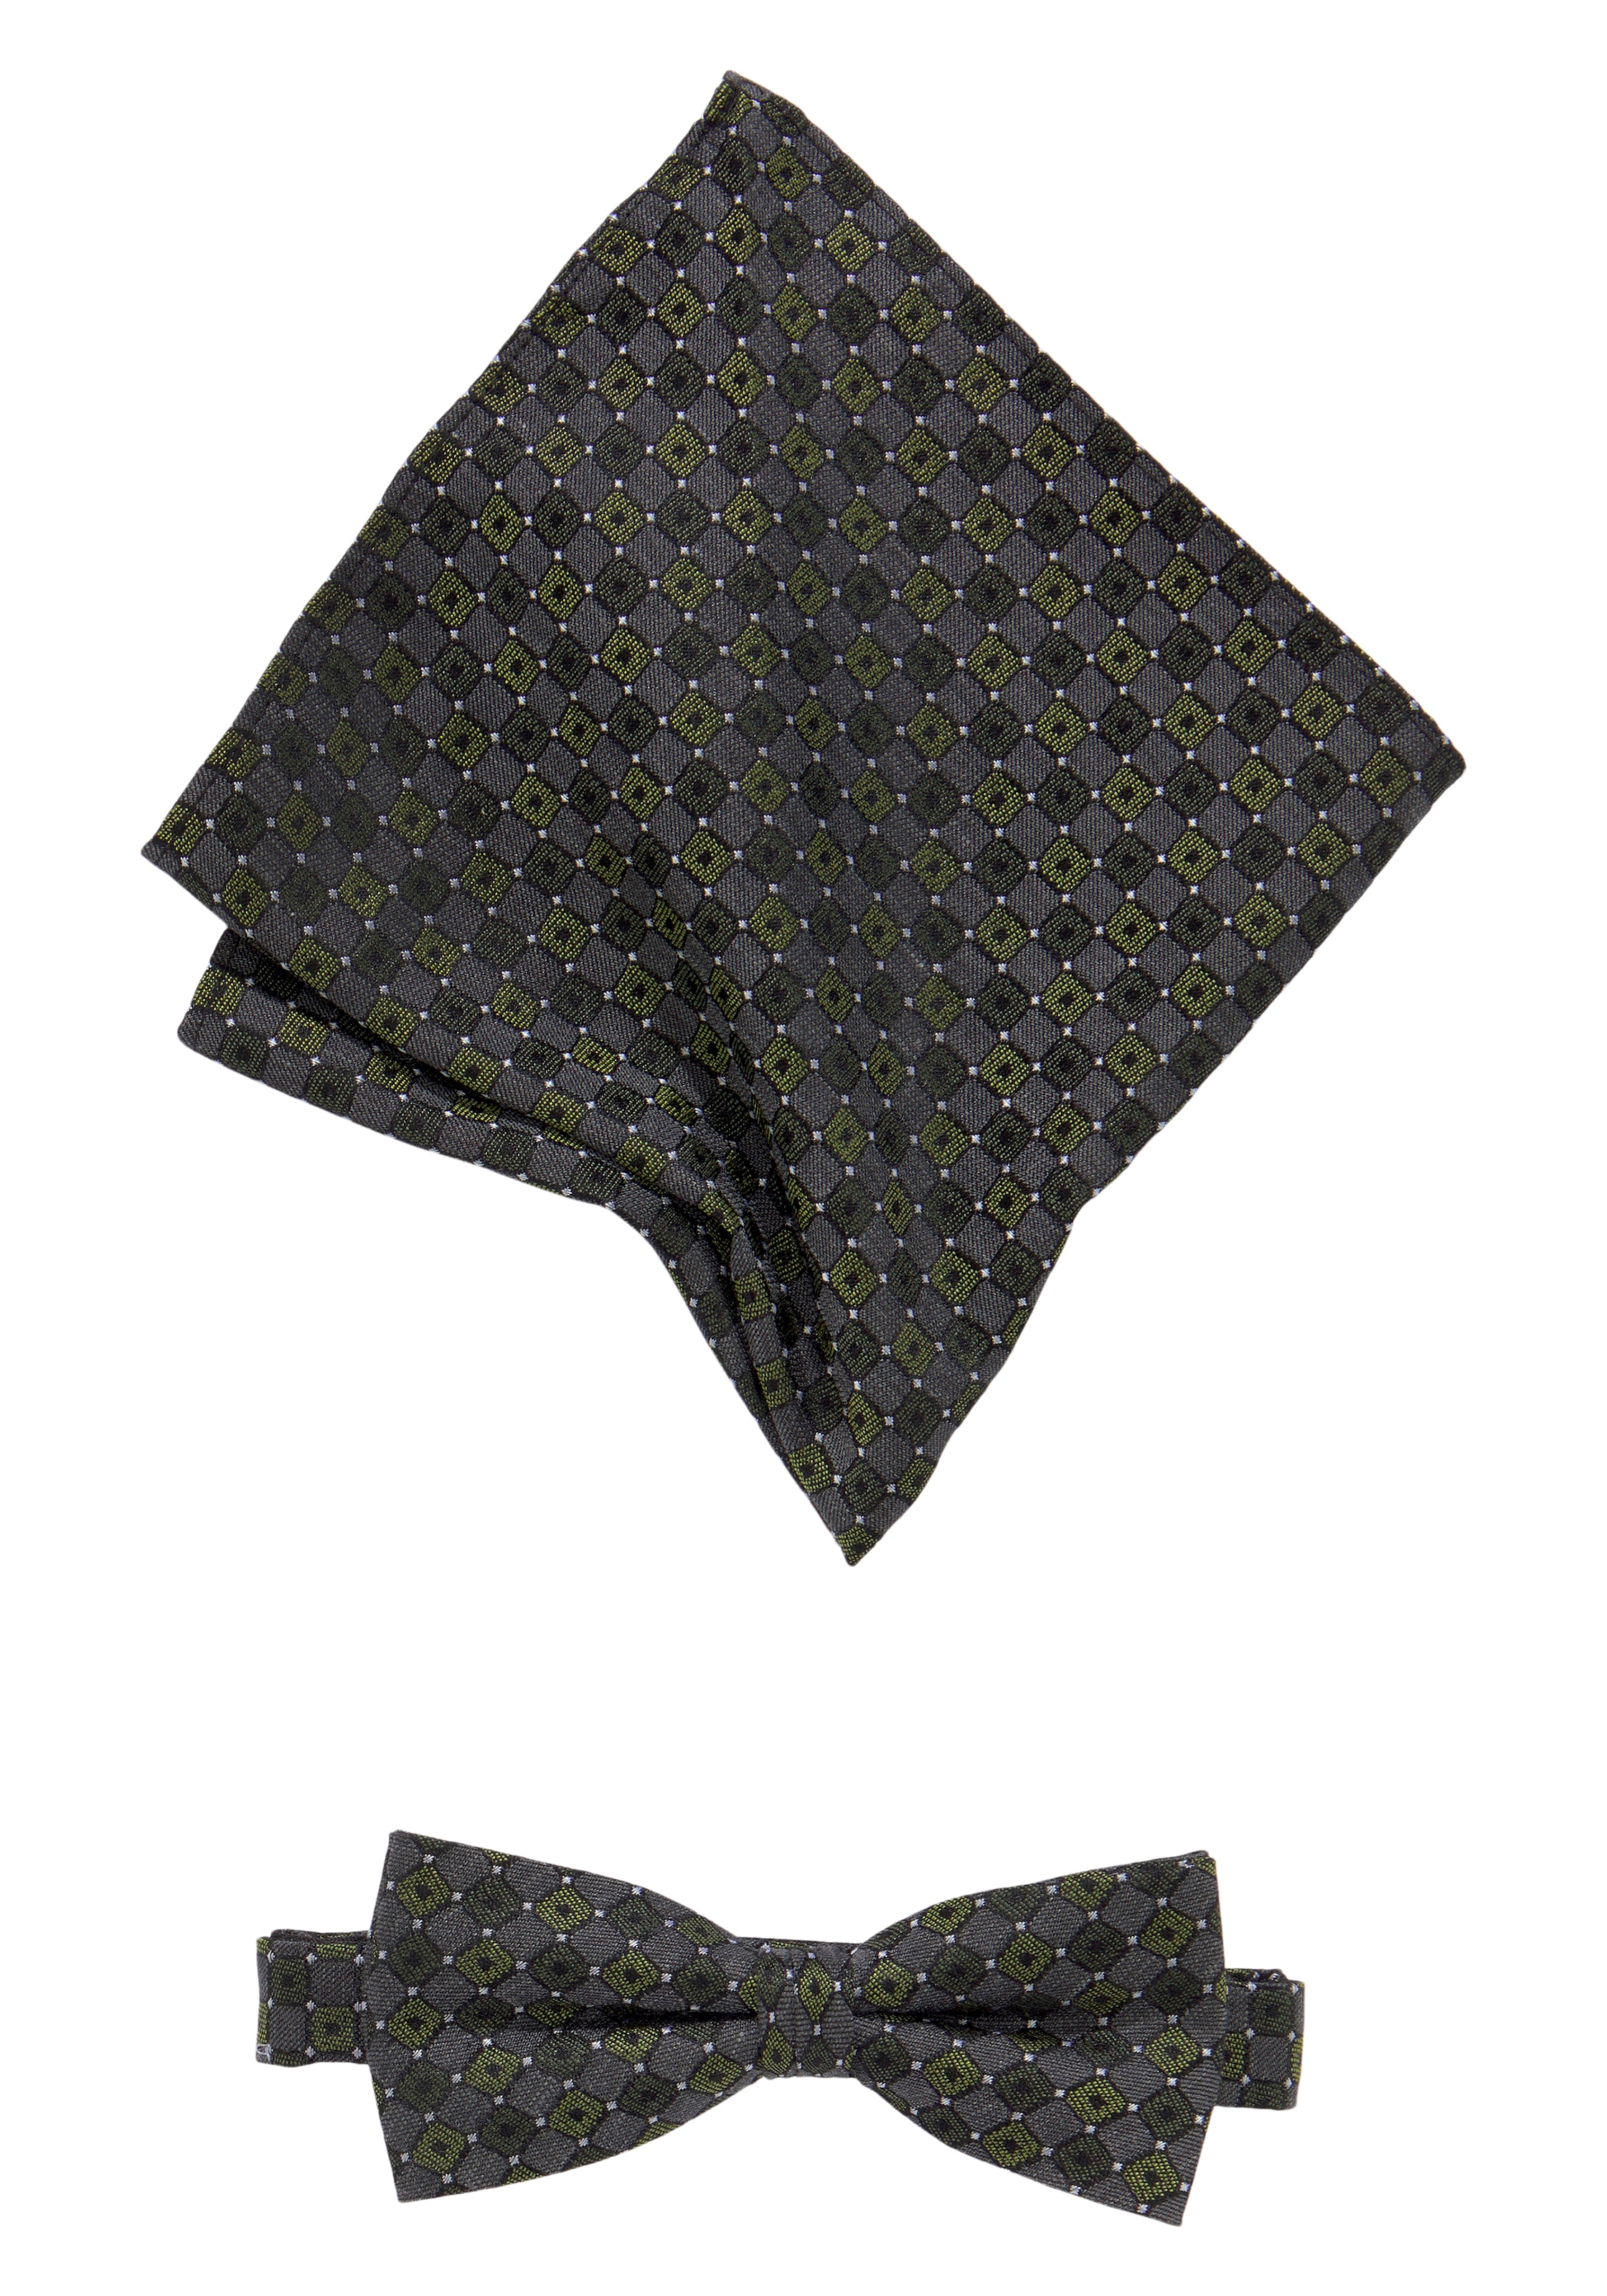 mehr | bei Krawatten Ackermann online und Krawatte jetzt kaufen